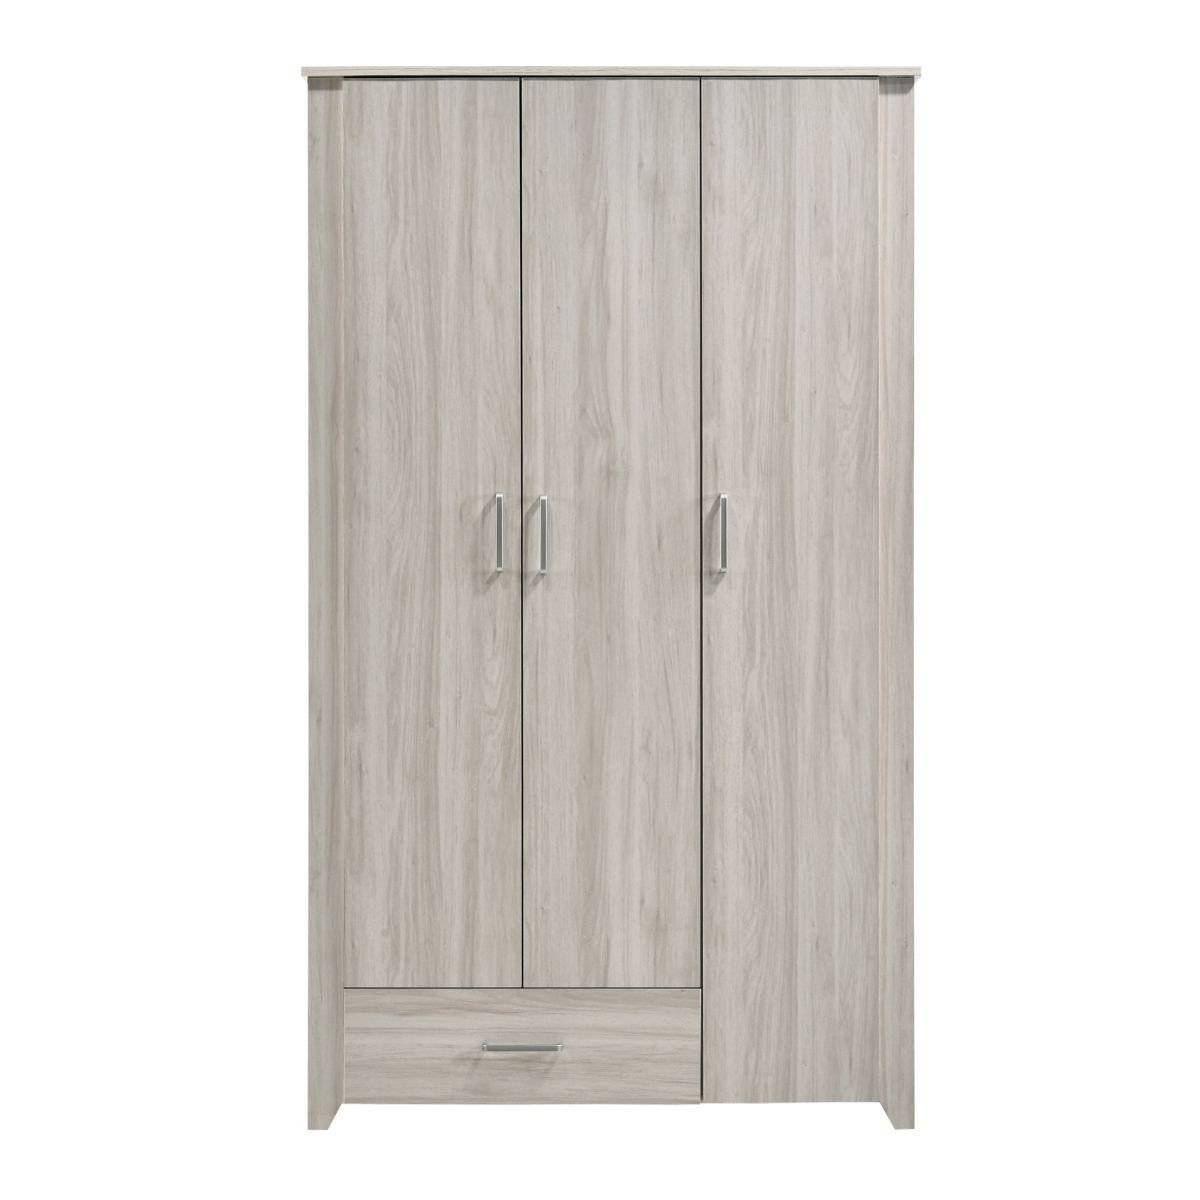 Shop Large 3 Door Wardrobe Bedroom Storage Cabinet Closet Online